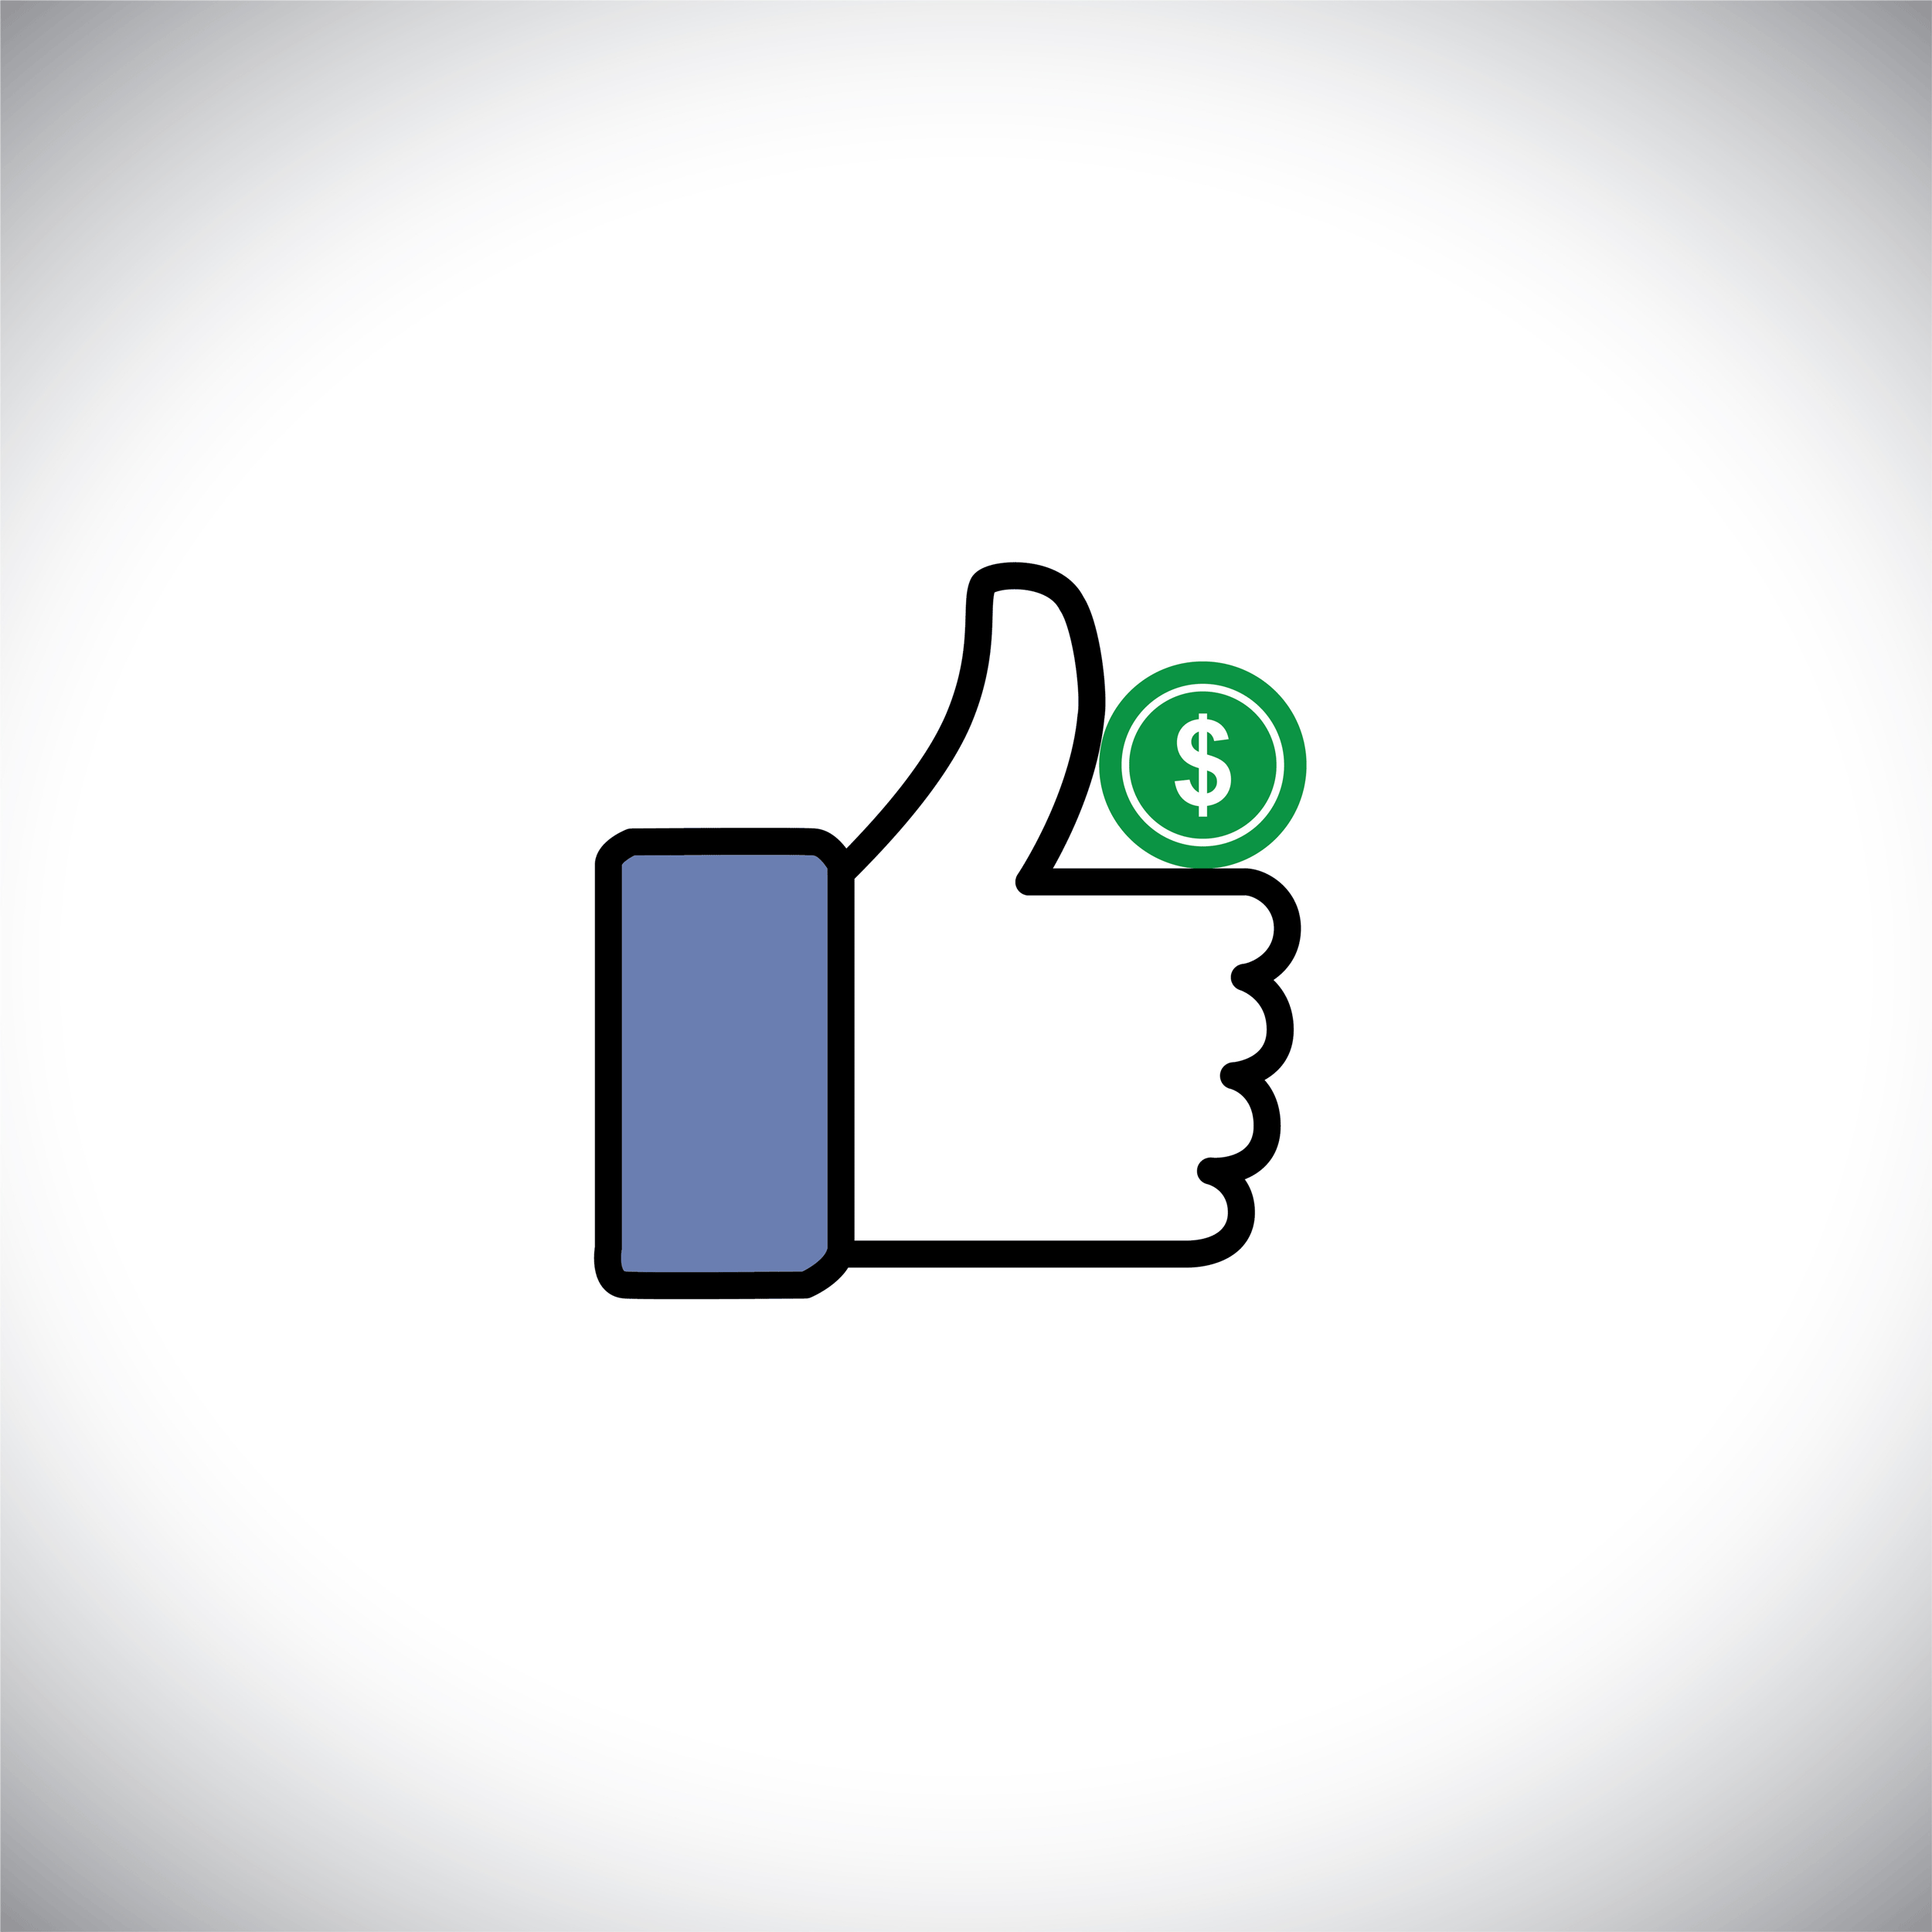 Facebook offre la possibilité de faire des dons. [vectorskills]